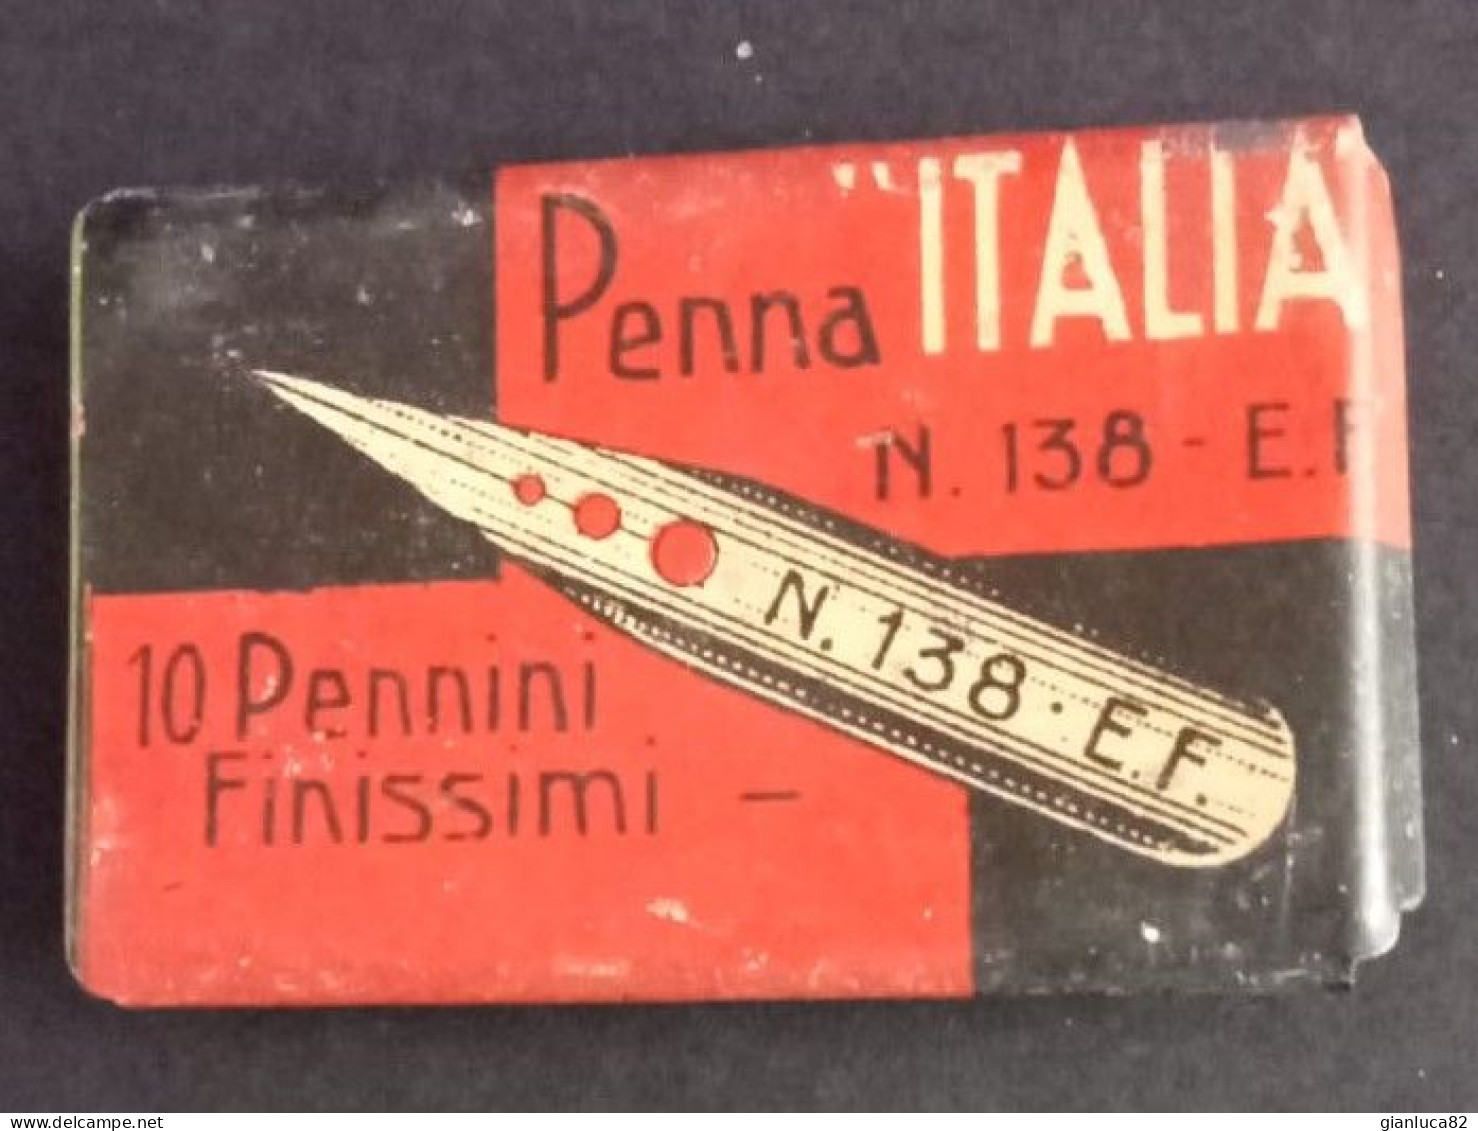 Scatolina In Latta Penna “Italia” N.138 E.F. Con 10 Pennini Finissimi N.920 (BV01)  Come Da Foto Ottime Condizioni - Other & Unclassified